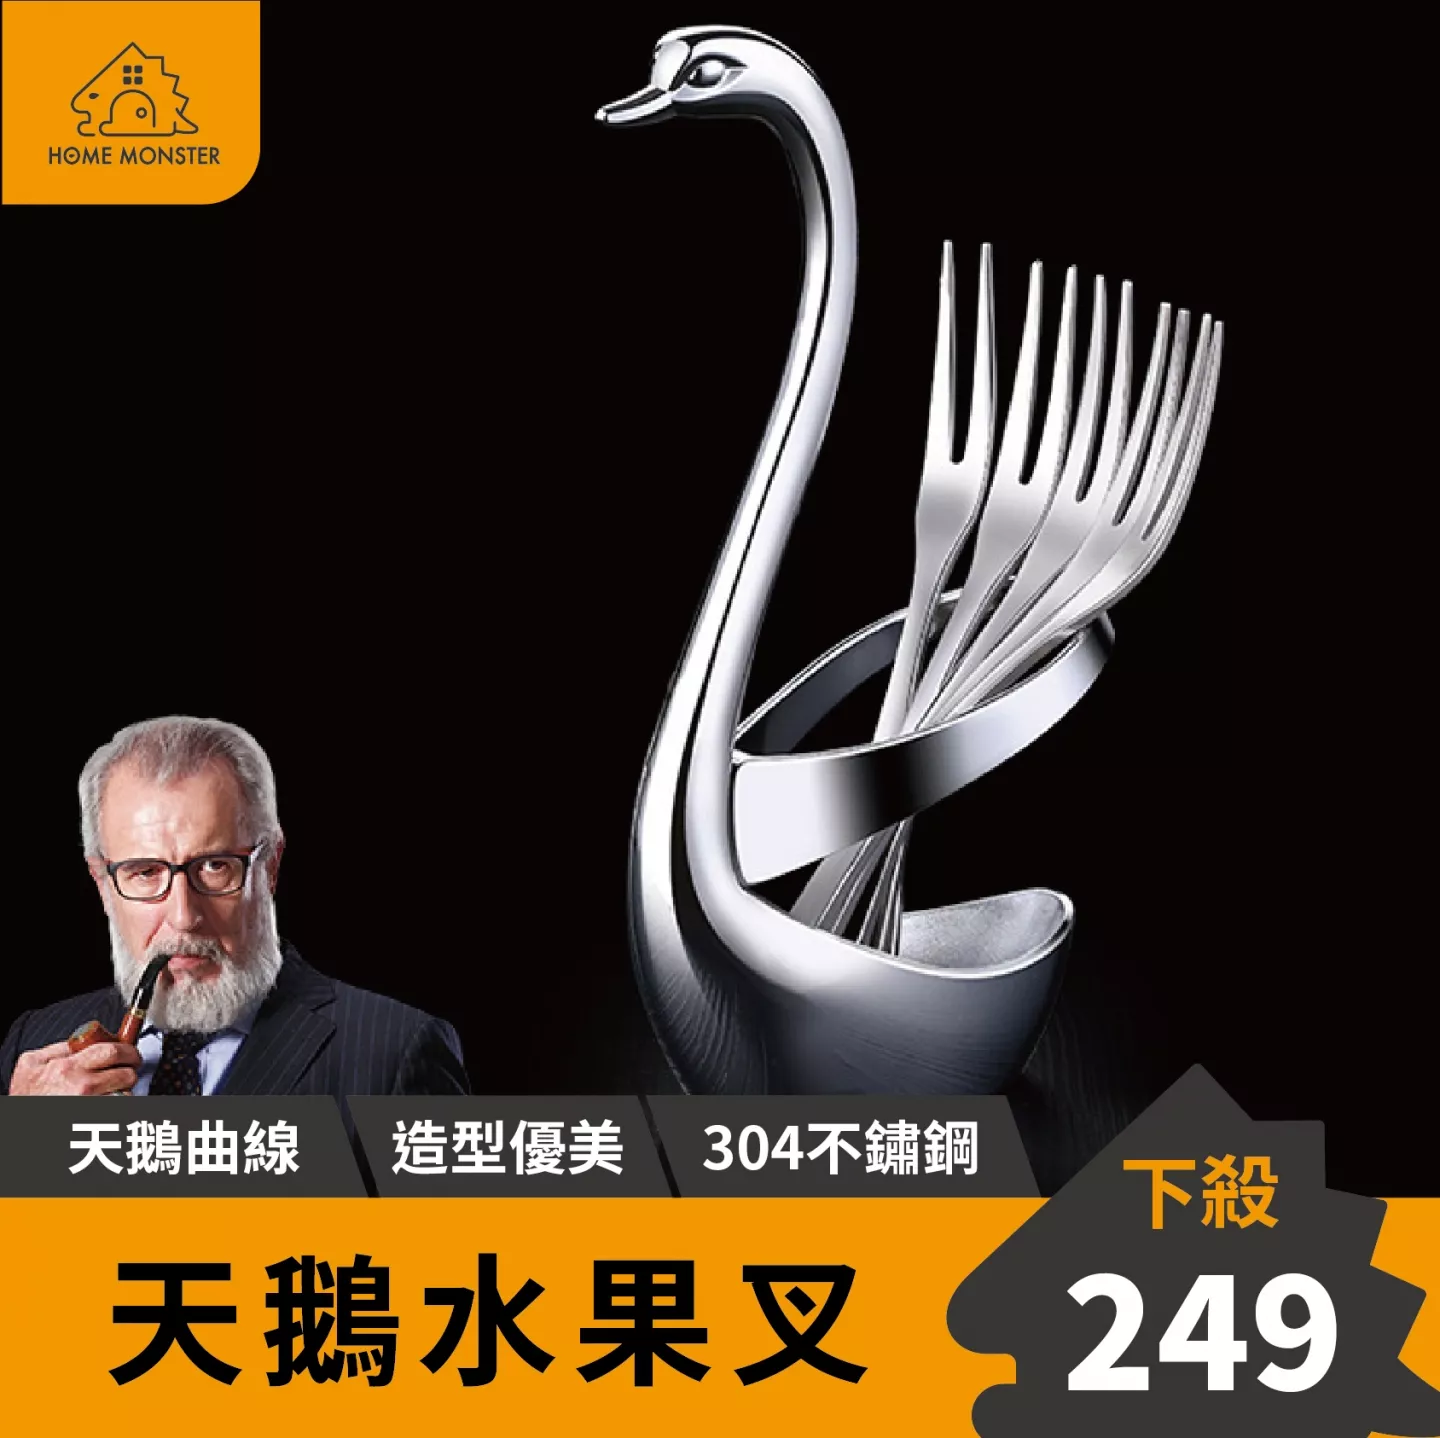 【廚房必備】天鵝水果叉套組(五入) 叉子 304不鏽鋼叉子